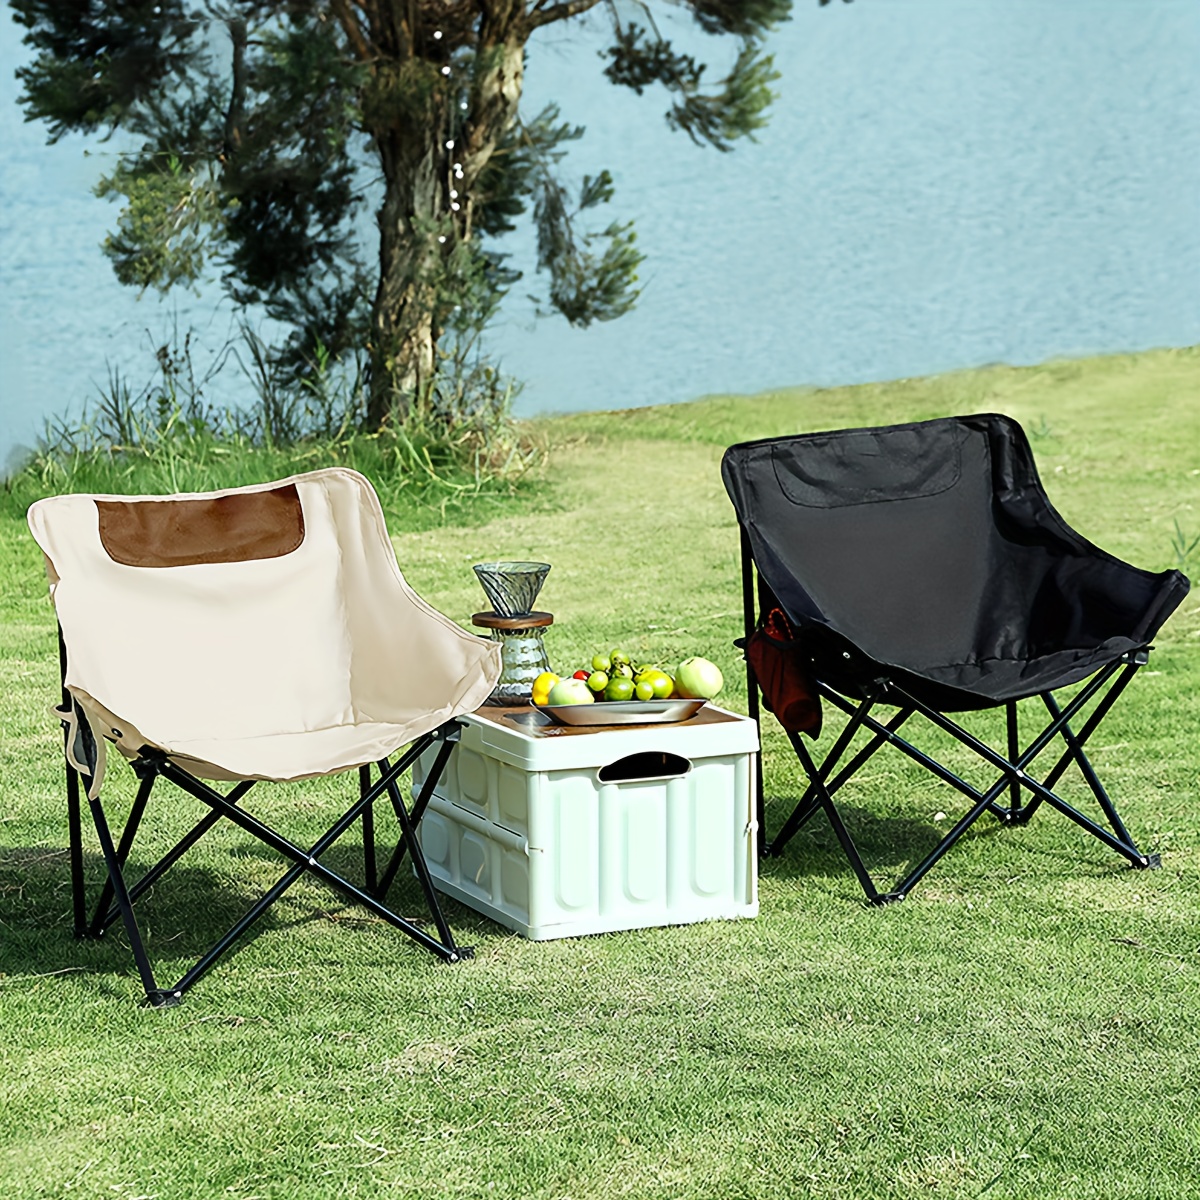 Silla de camping – Silla plegable portátil de madera y lona para  exteriores, ideal para camping, patios, césped o uso en interiores, soporta  300